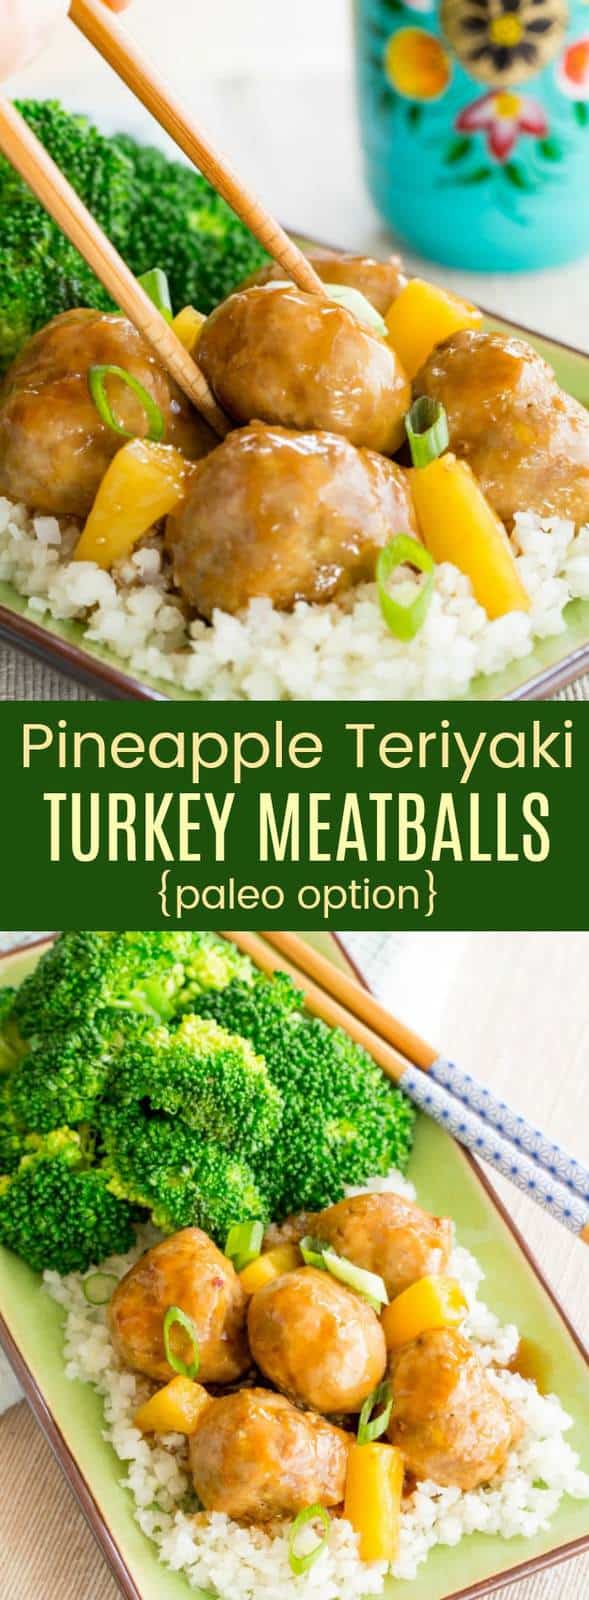 Pineapple Teriyaki Turkey Meatballs {meal prep} - Cupcakes ... - 589 x 1600 jpeg 85kB